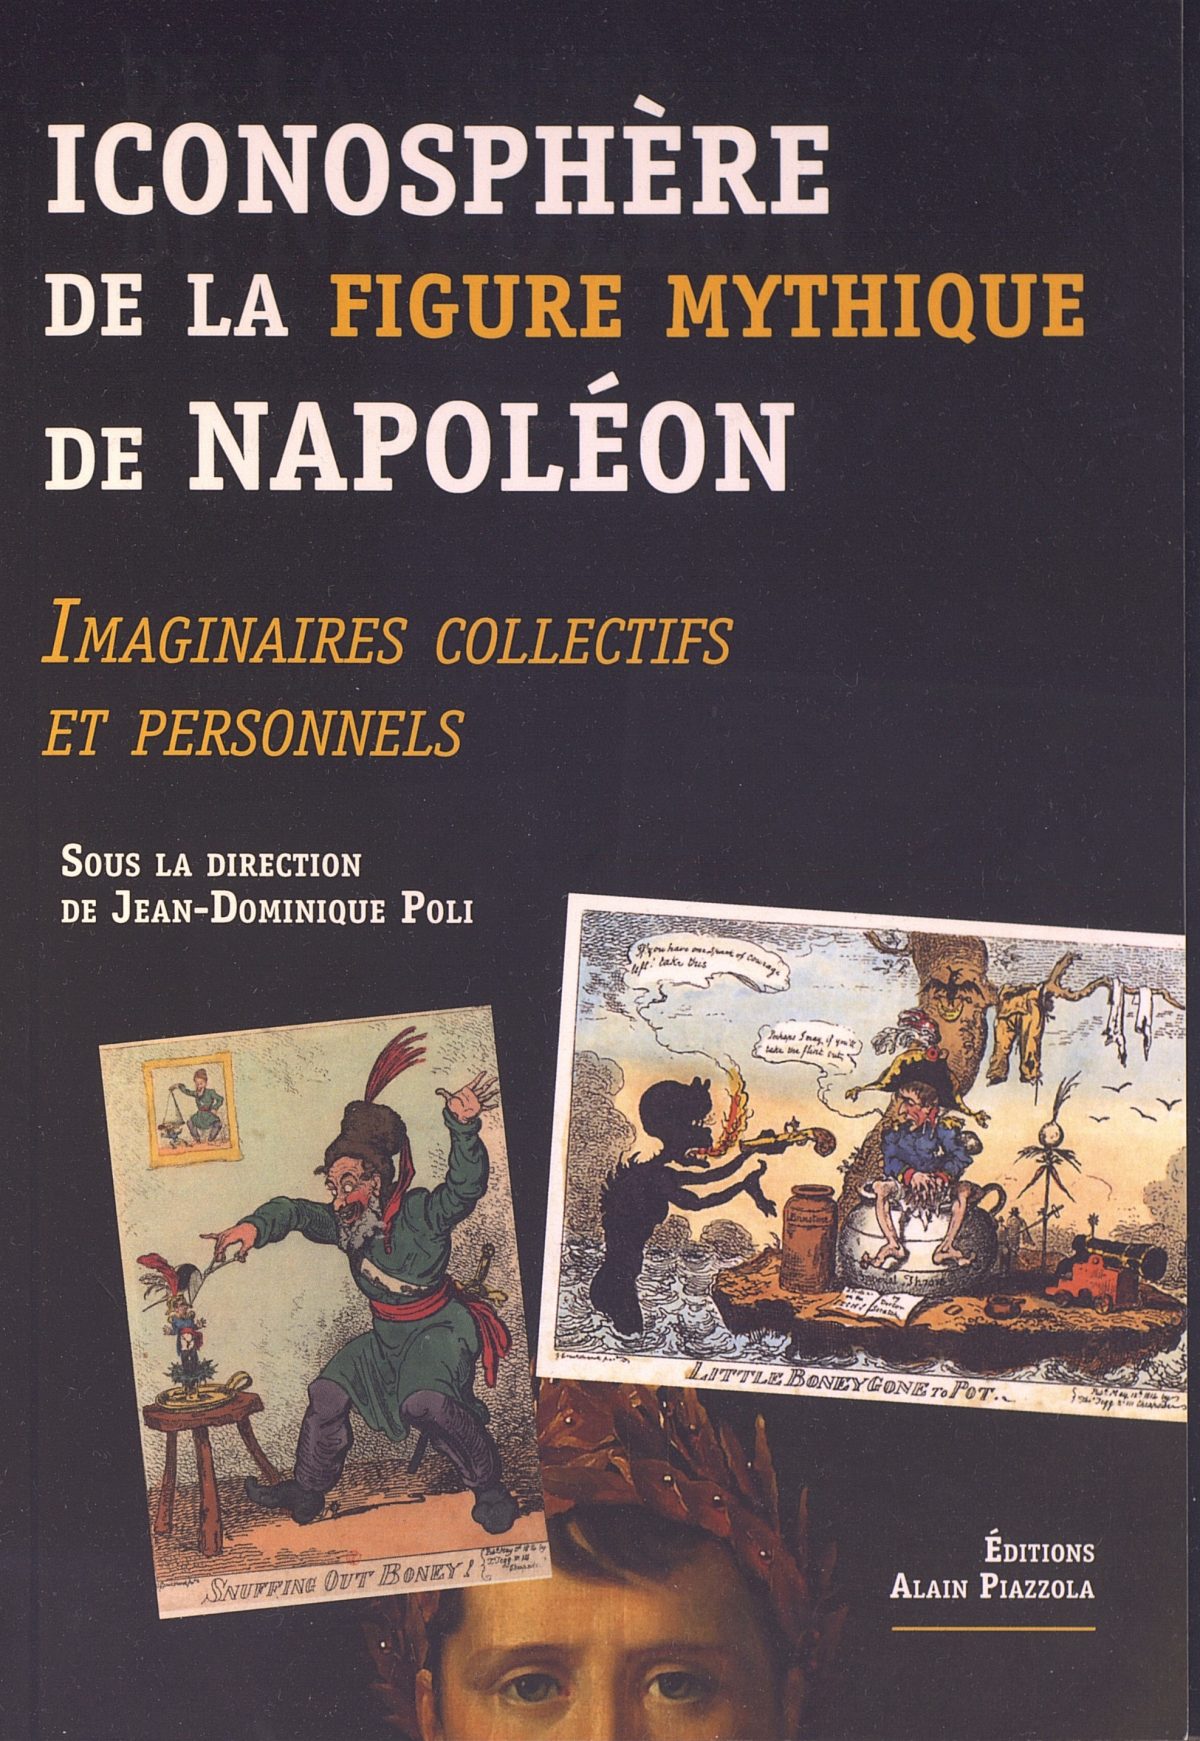 Iconosphère de la figure mythique de Napoléon: imaginaires collectifs et personnels, Ajaccio : Alain Piazzola, 2015.